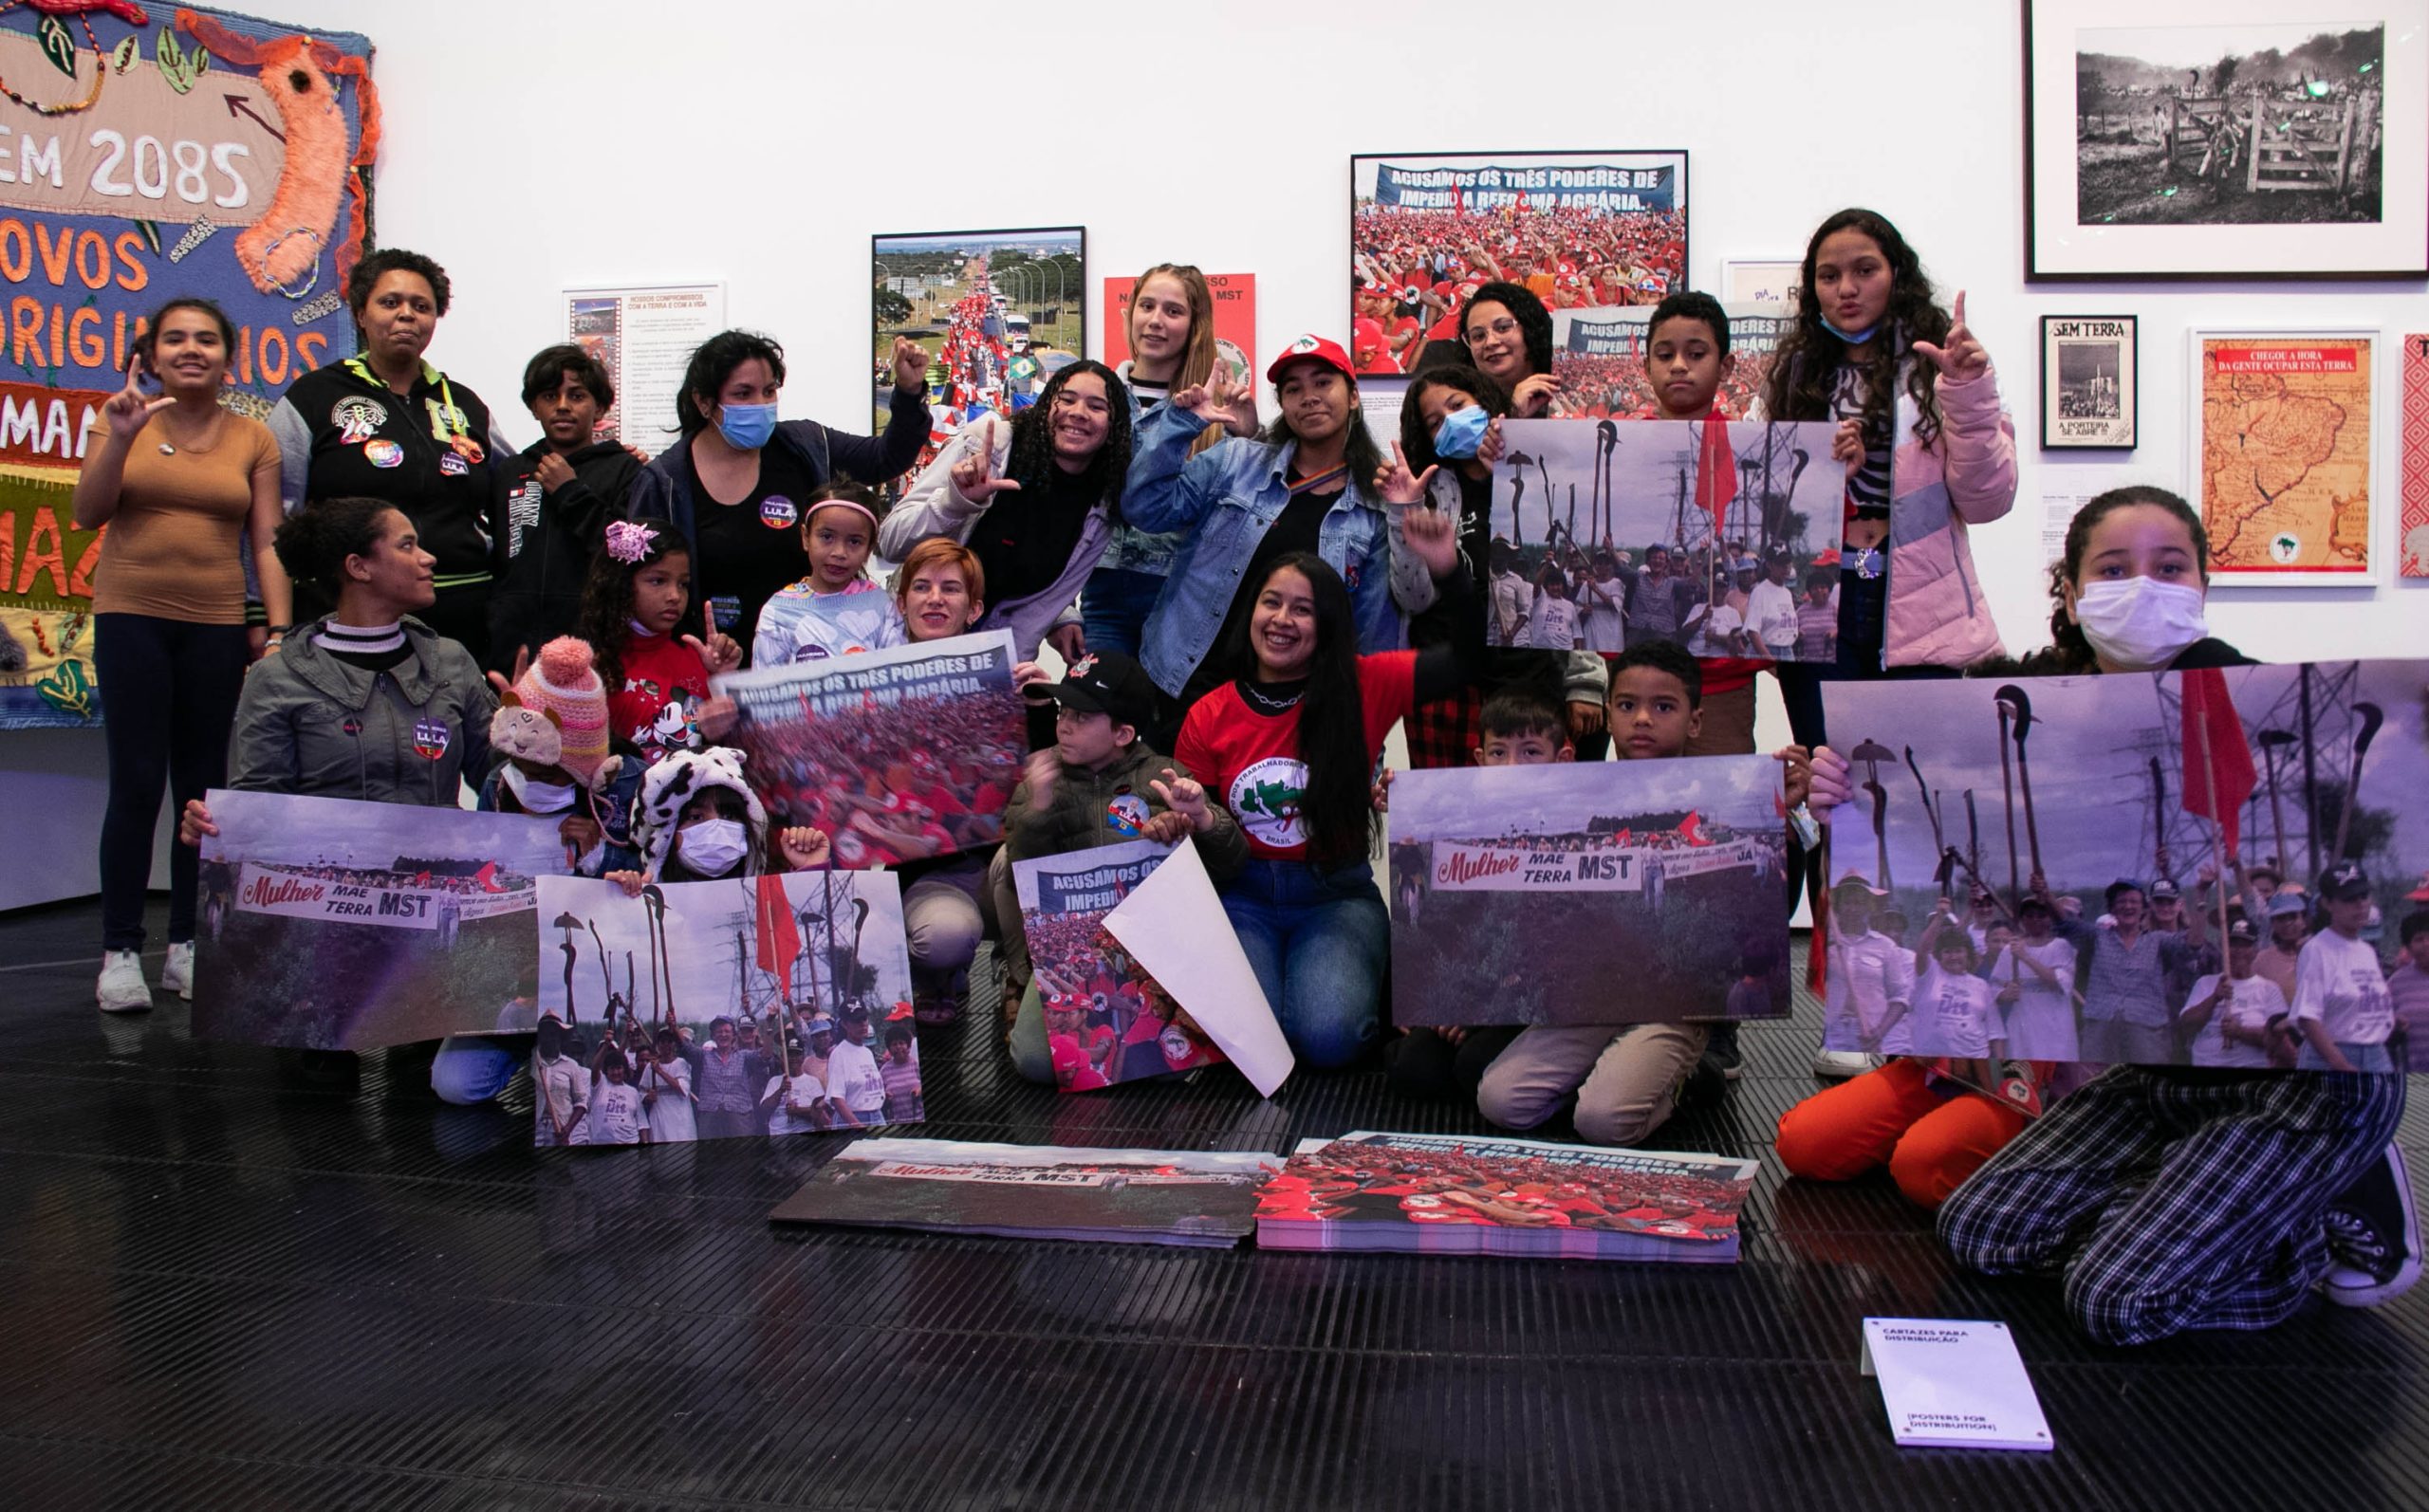 Crianças Sem Terrinha visitam a exposição “Histórias Brasileiras”, no Museu de Arte de São Paulo (MASP)